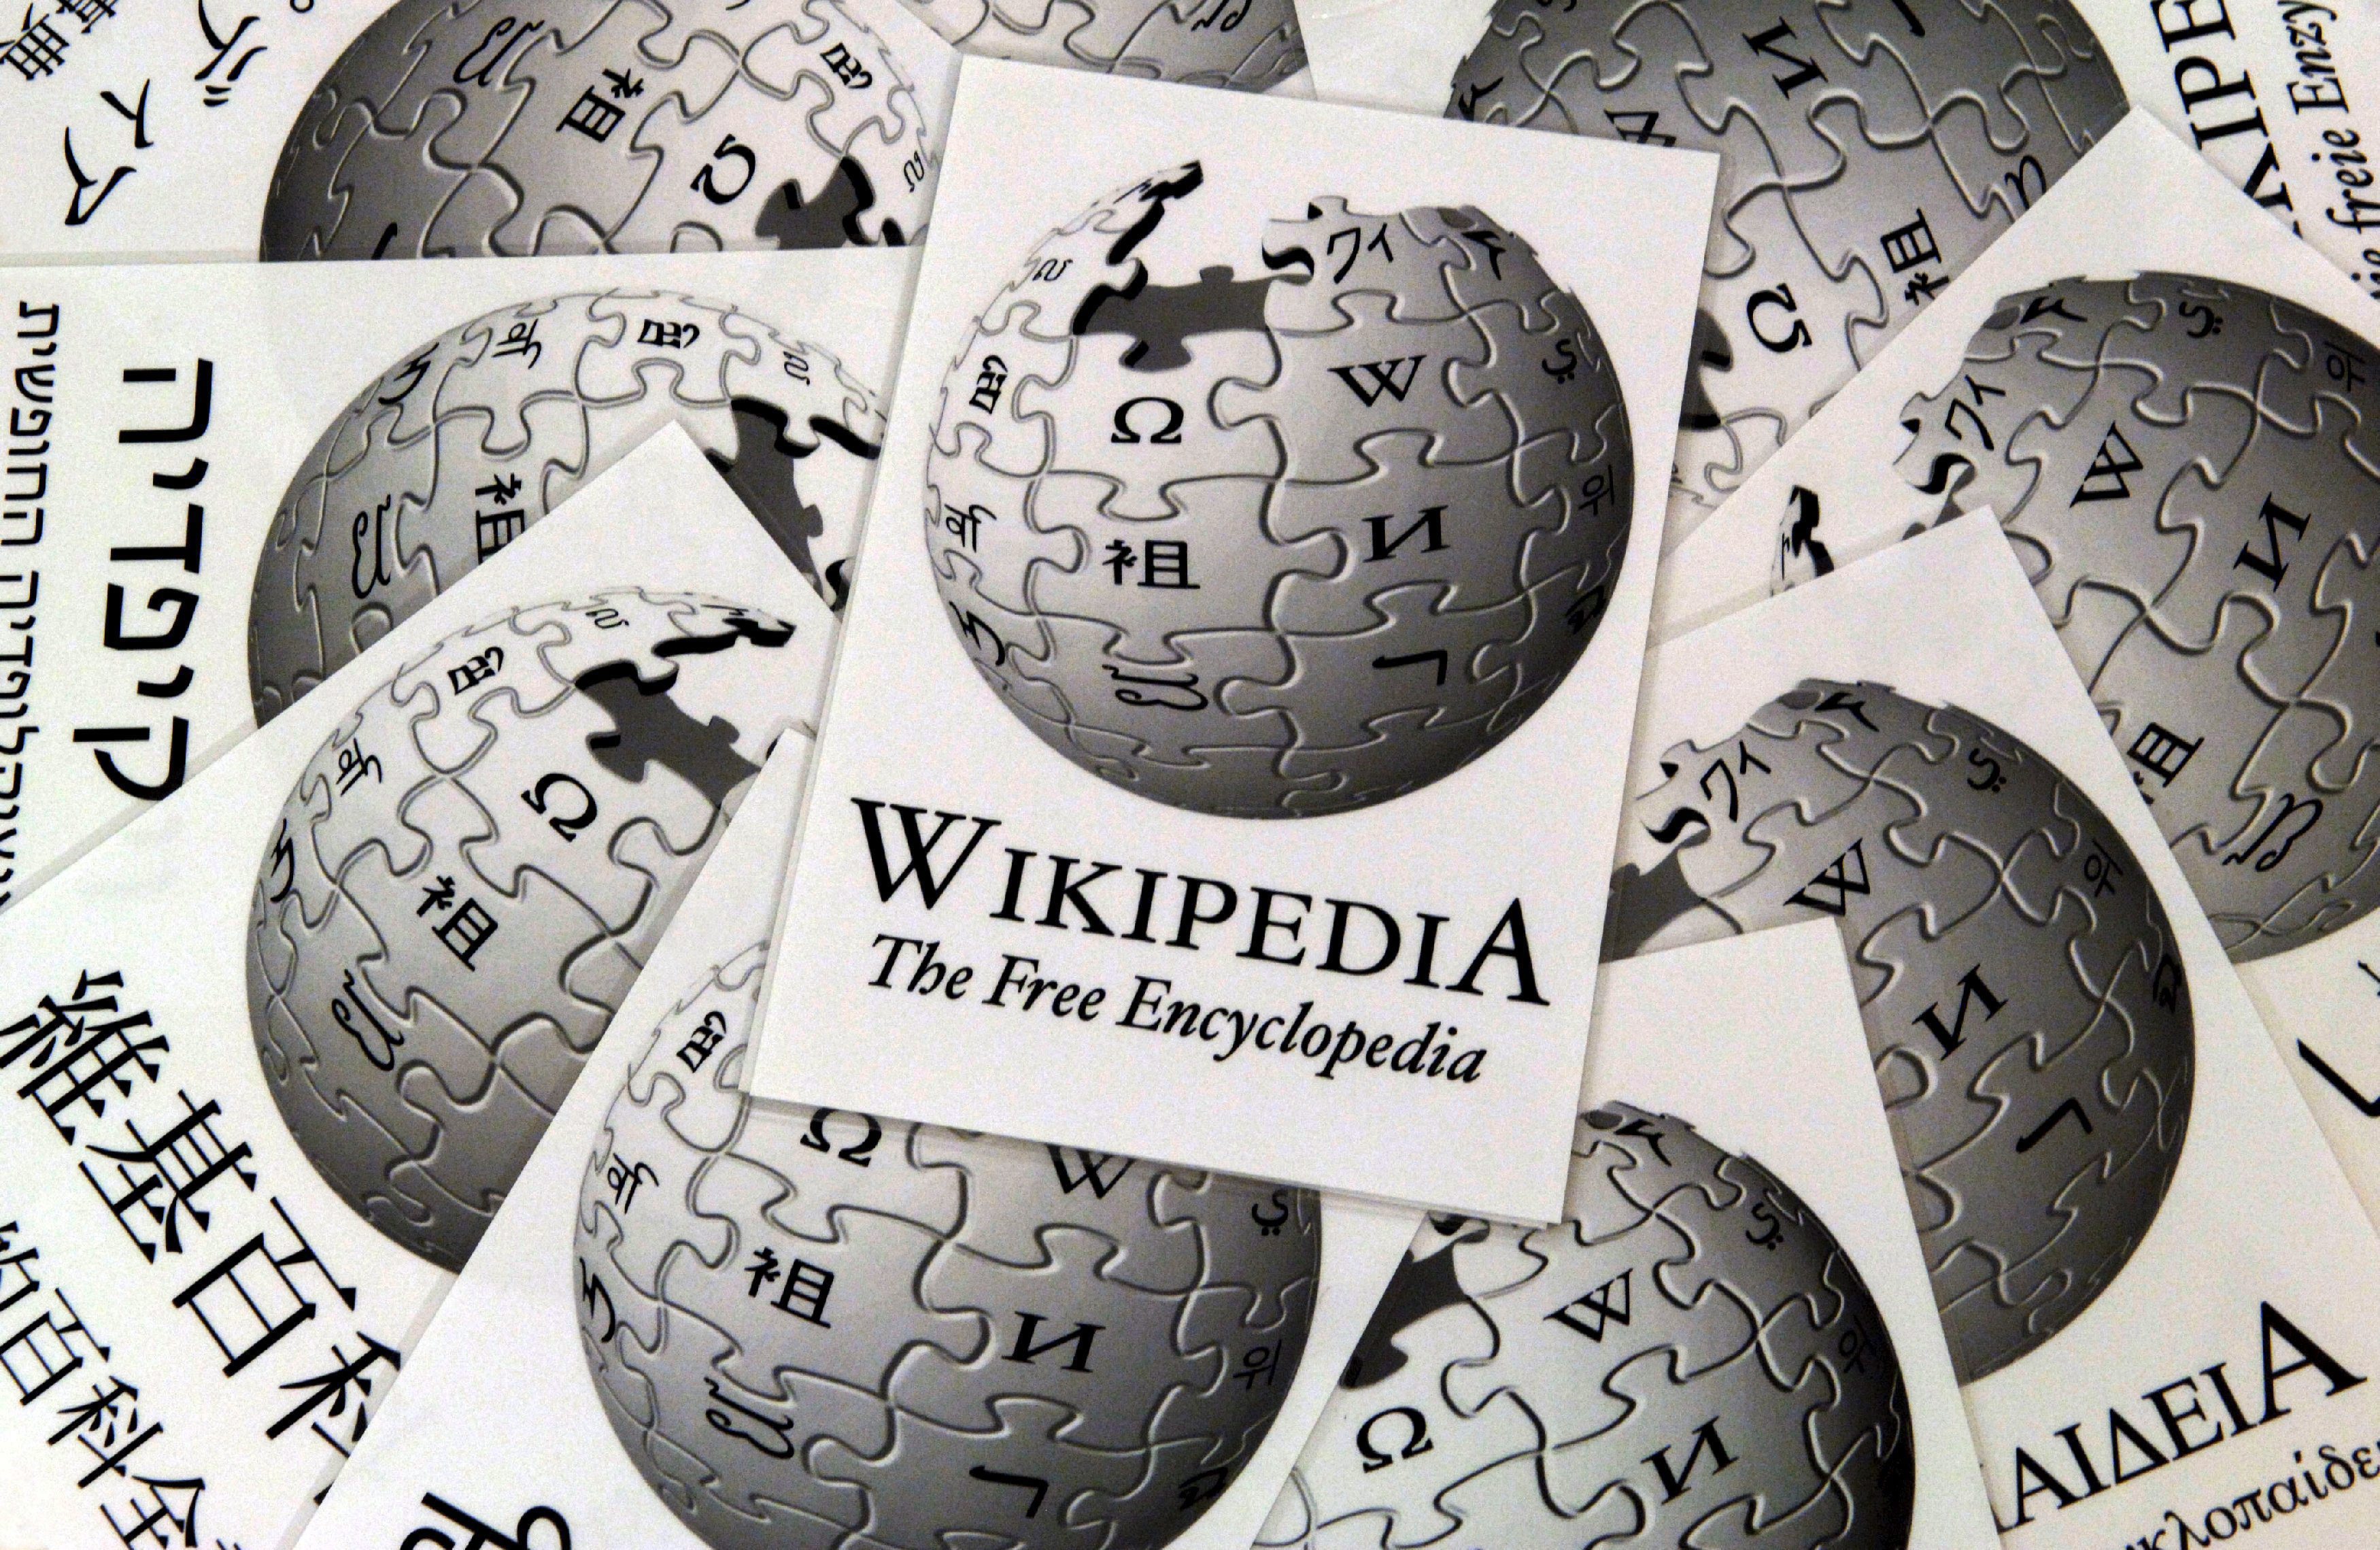 ”Представете си свят без свободно знание” е изписано с удебелени букви на вече бялата страница на сайта Ru.Wikipedia.org